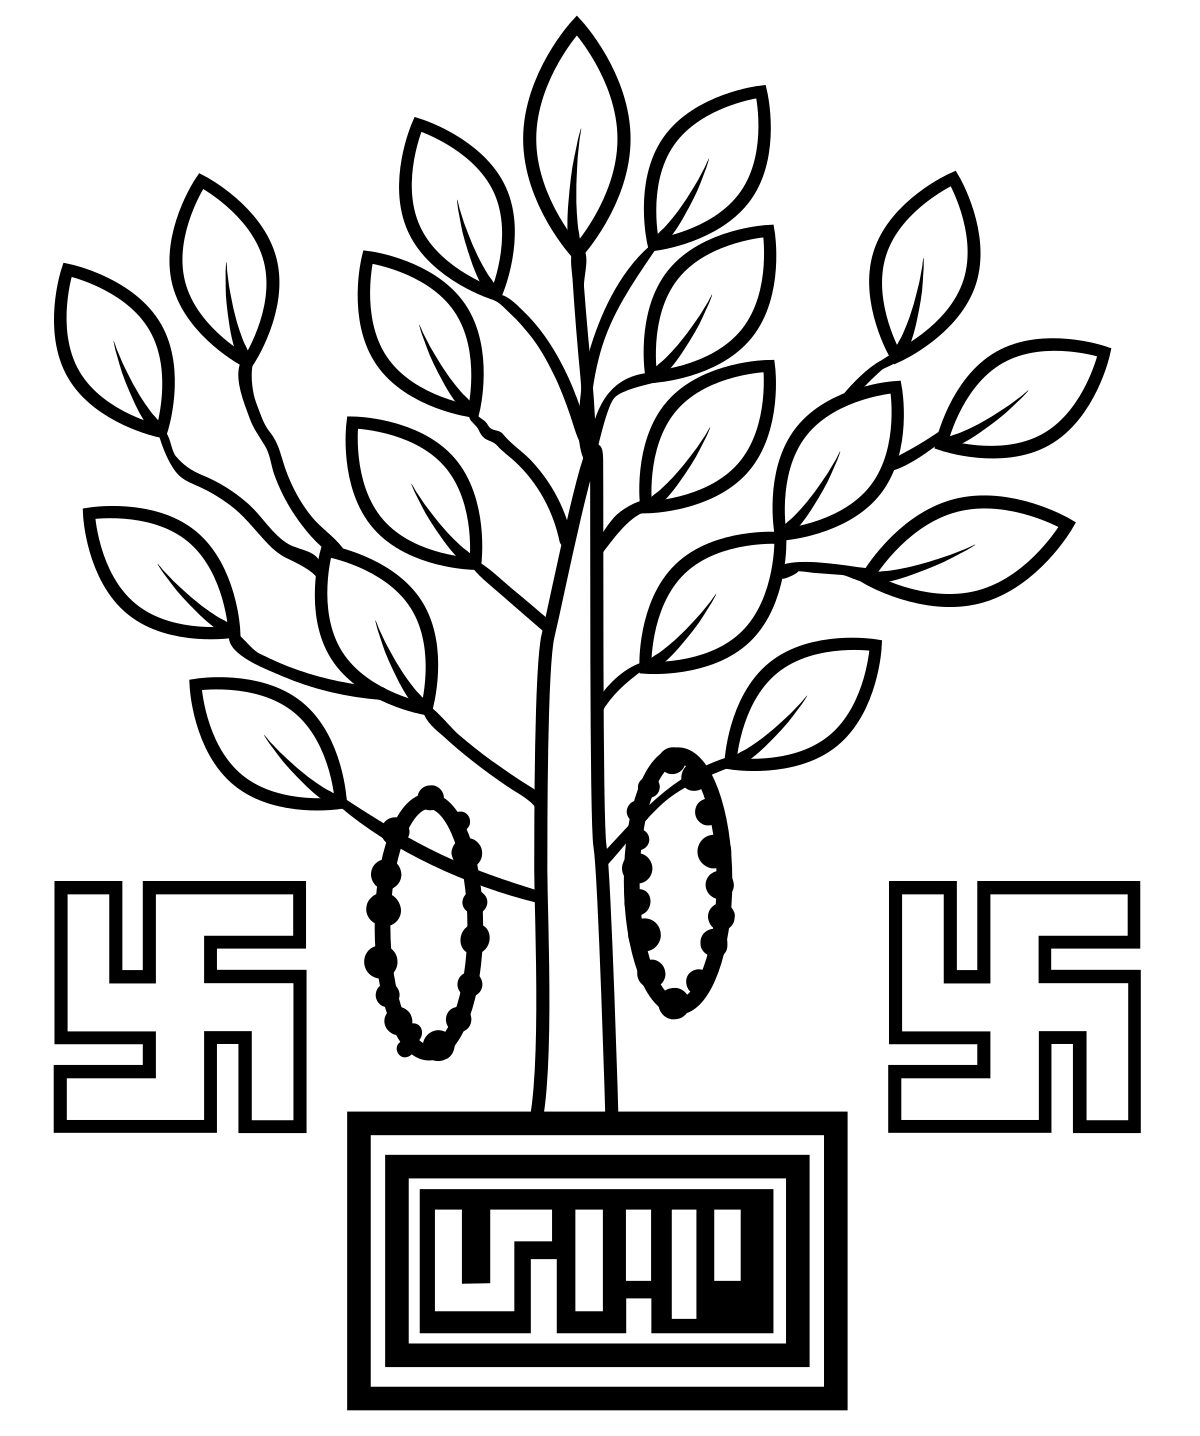 Emblem of Bihar